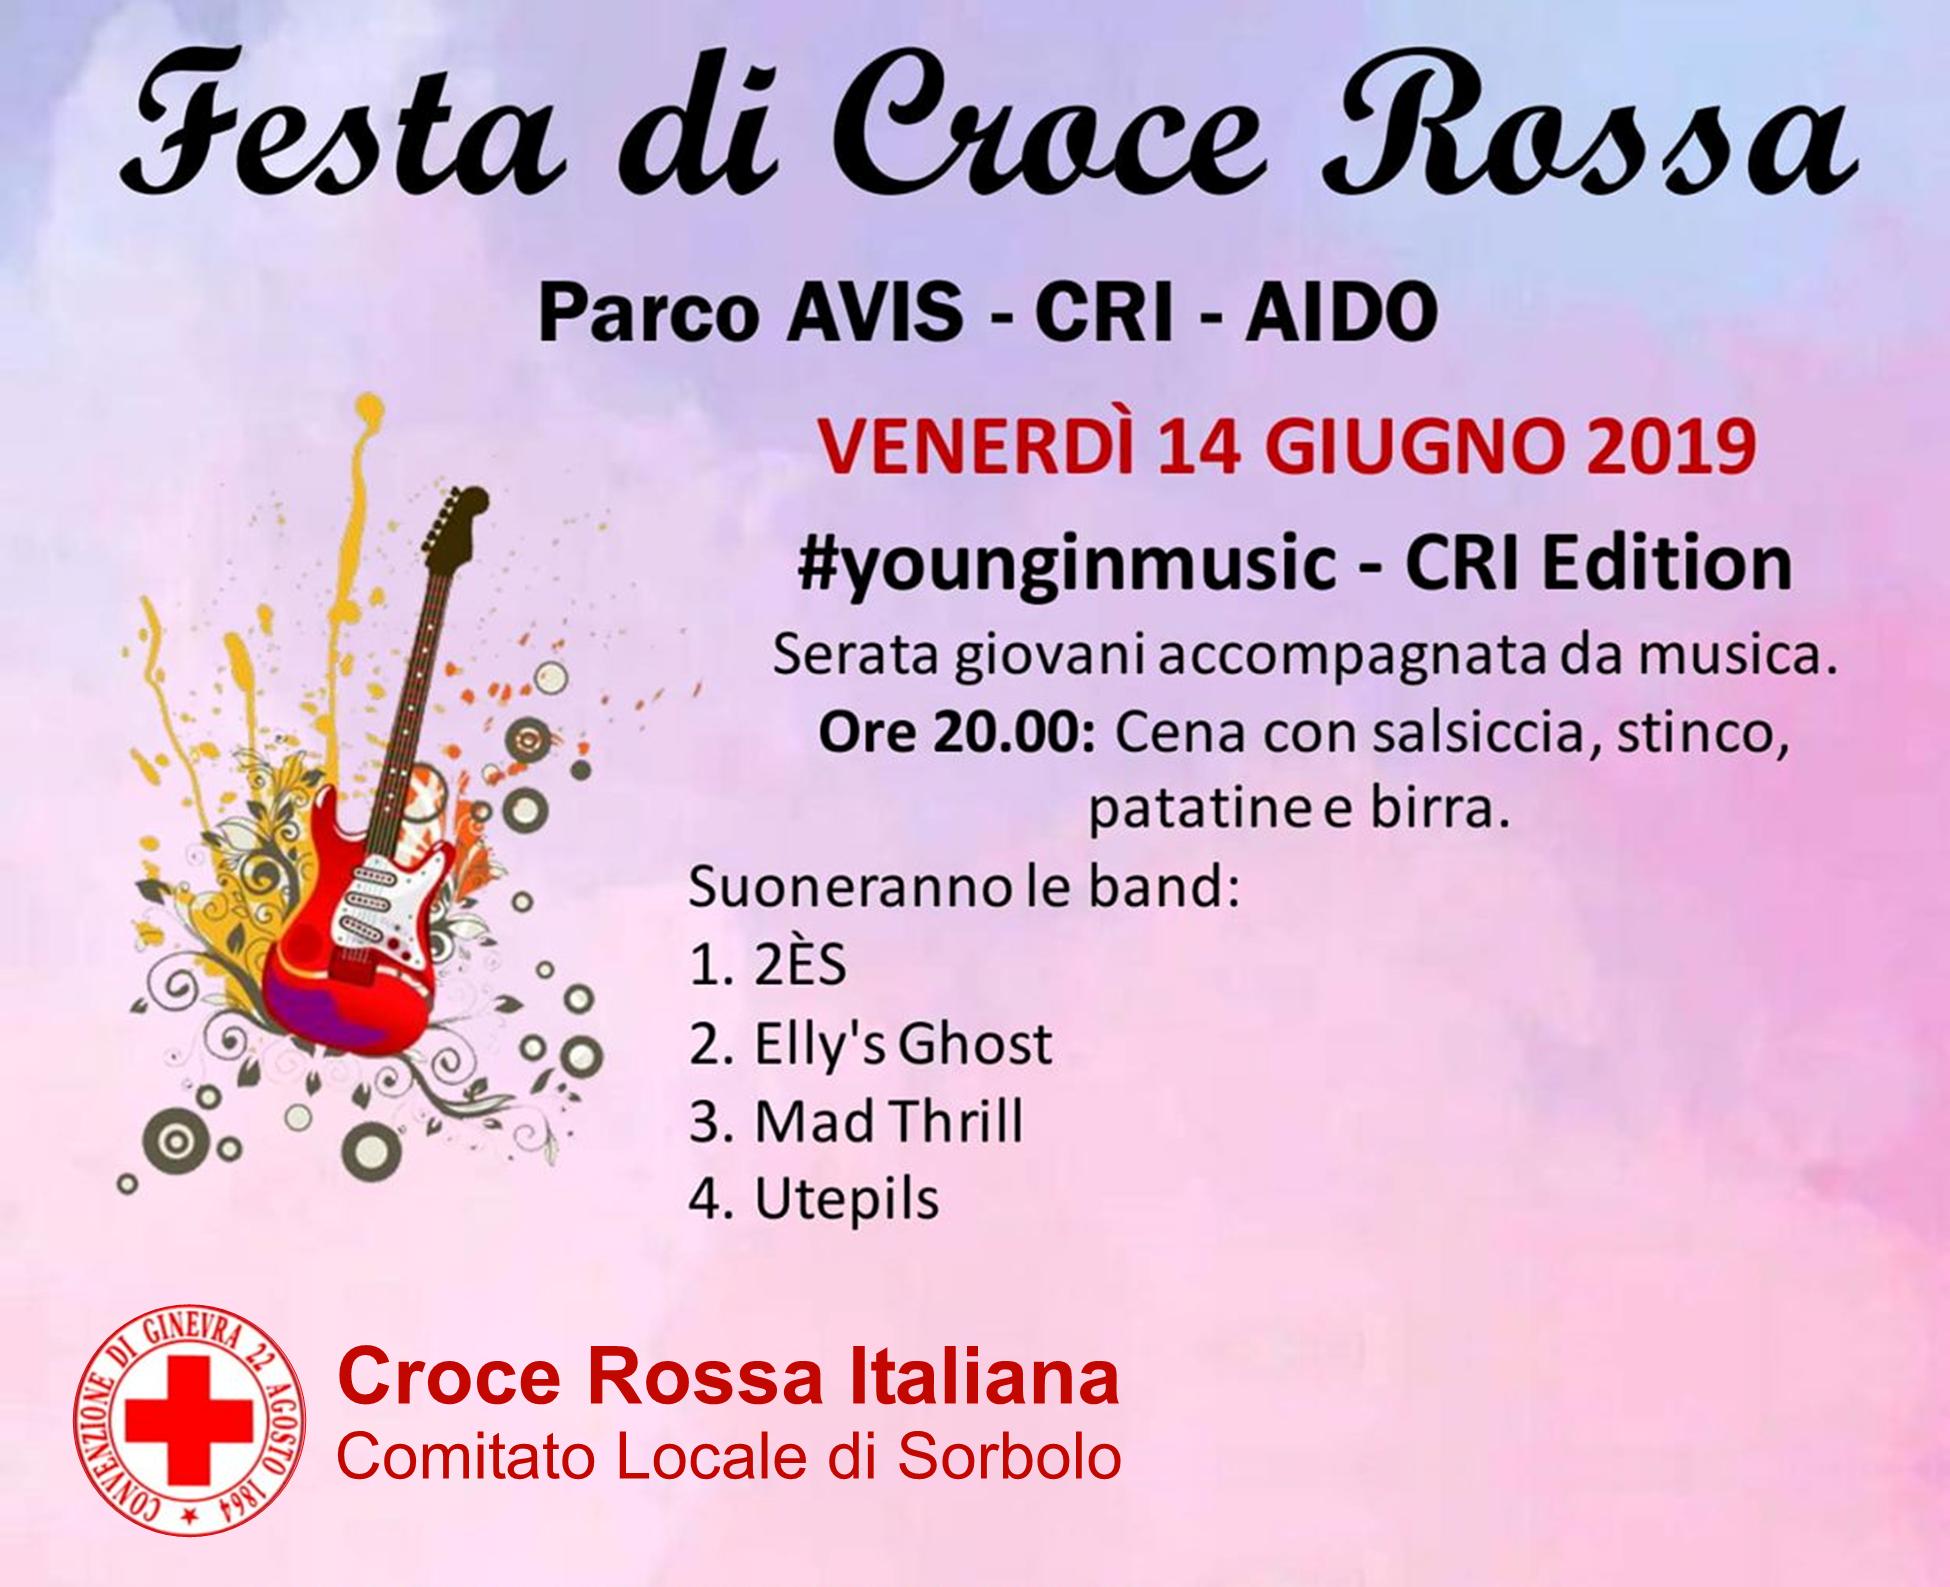 Festa Croce Rossa Italiana Sorbolo - 14 giugno 2019